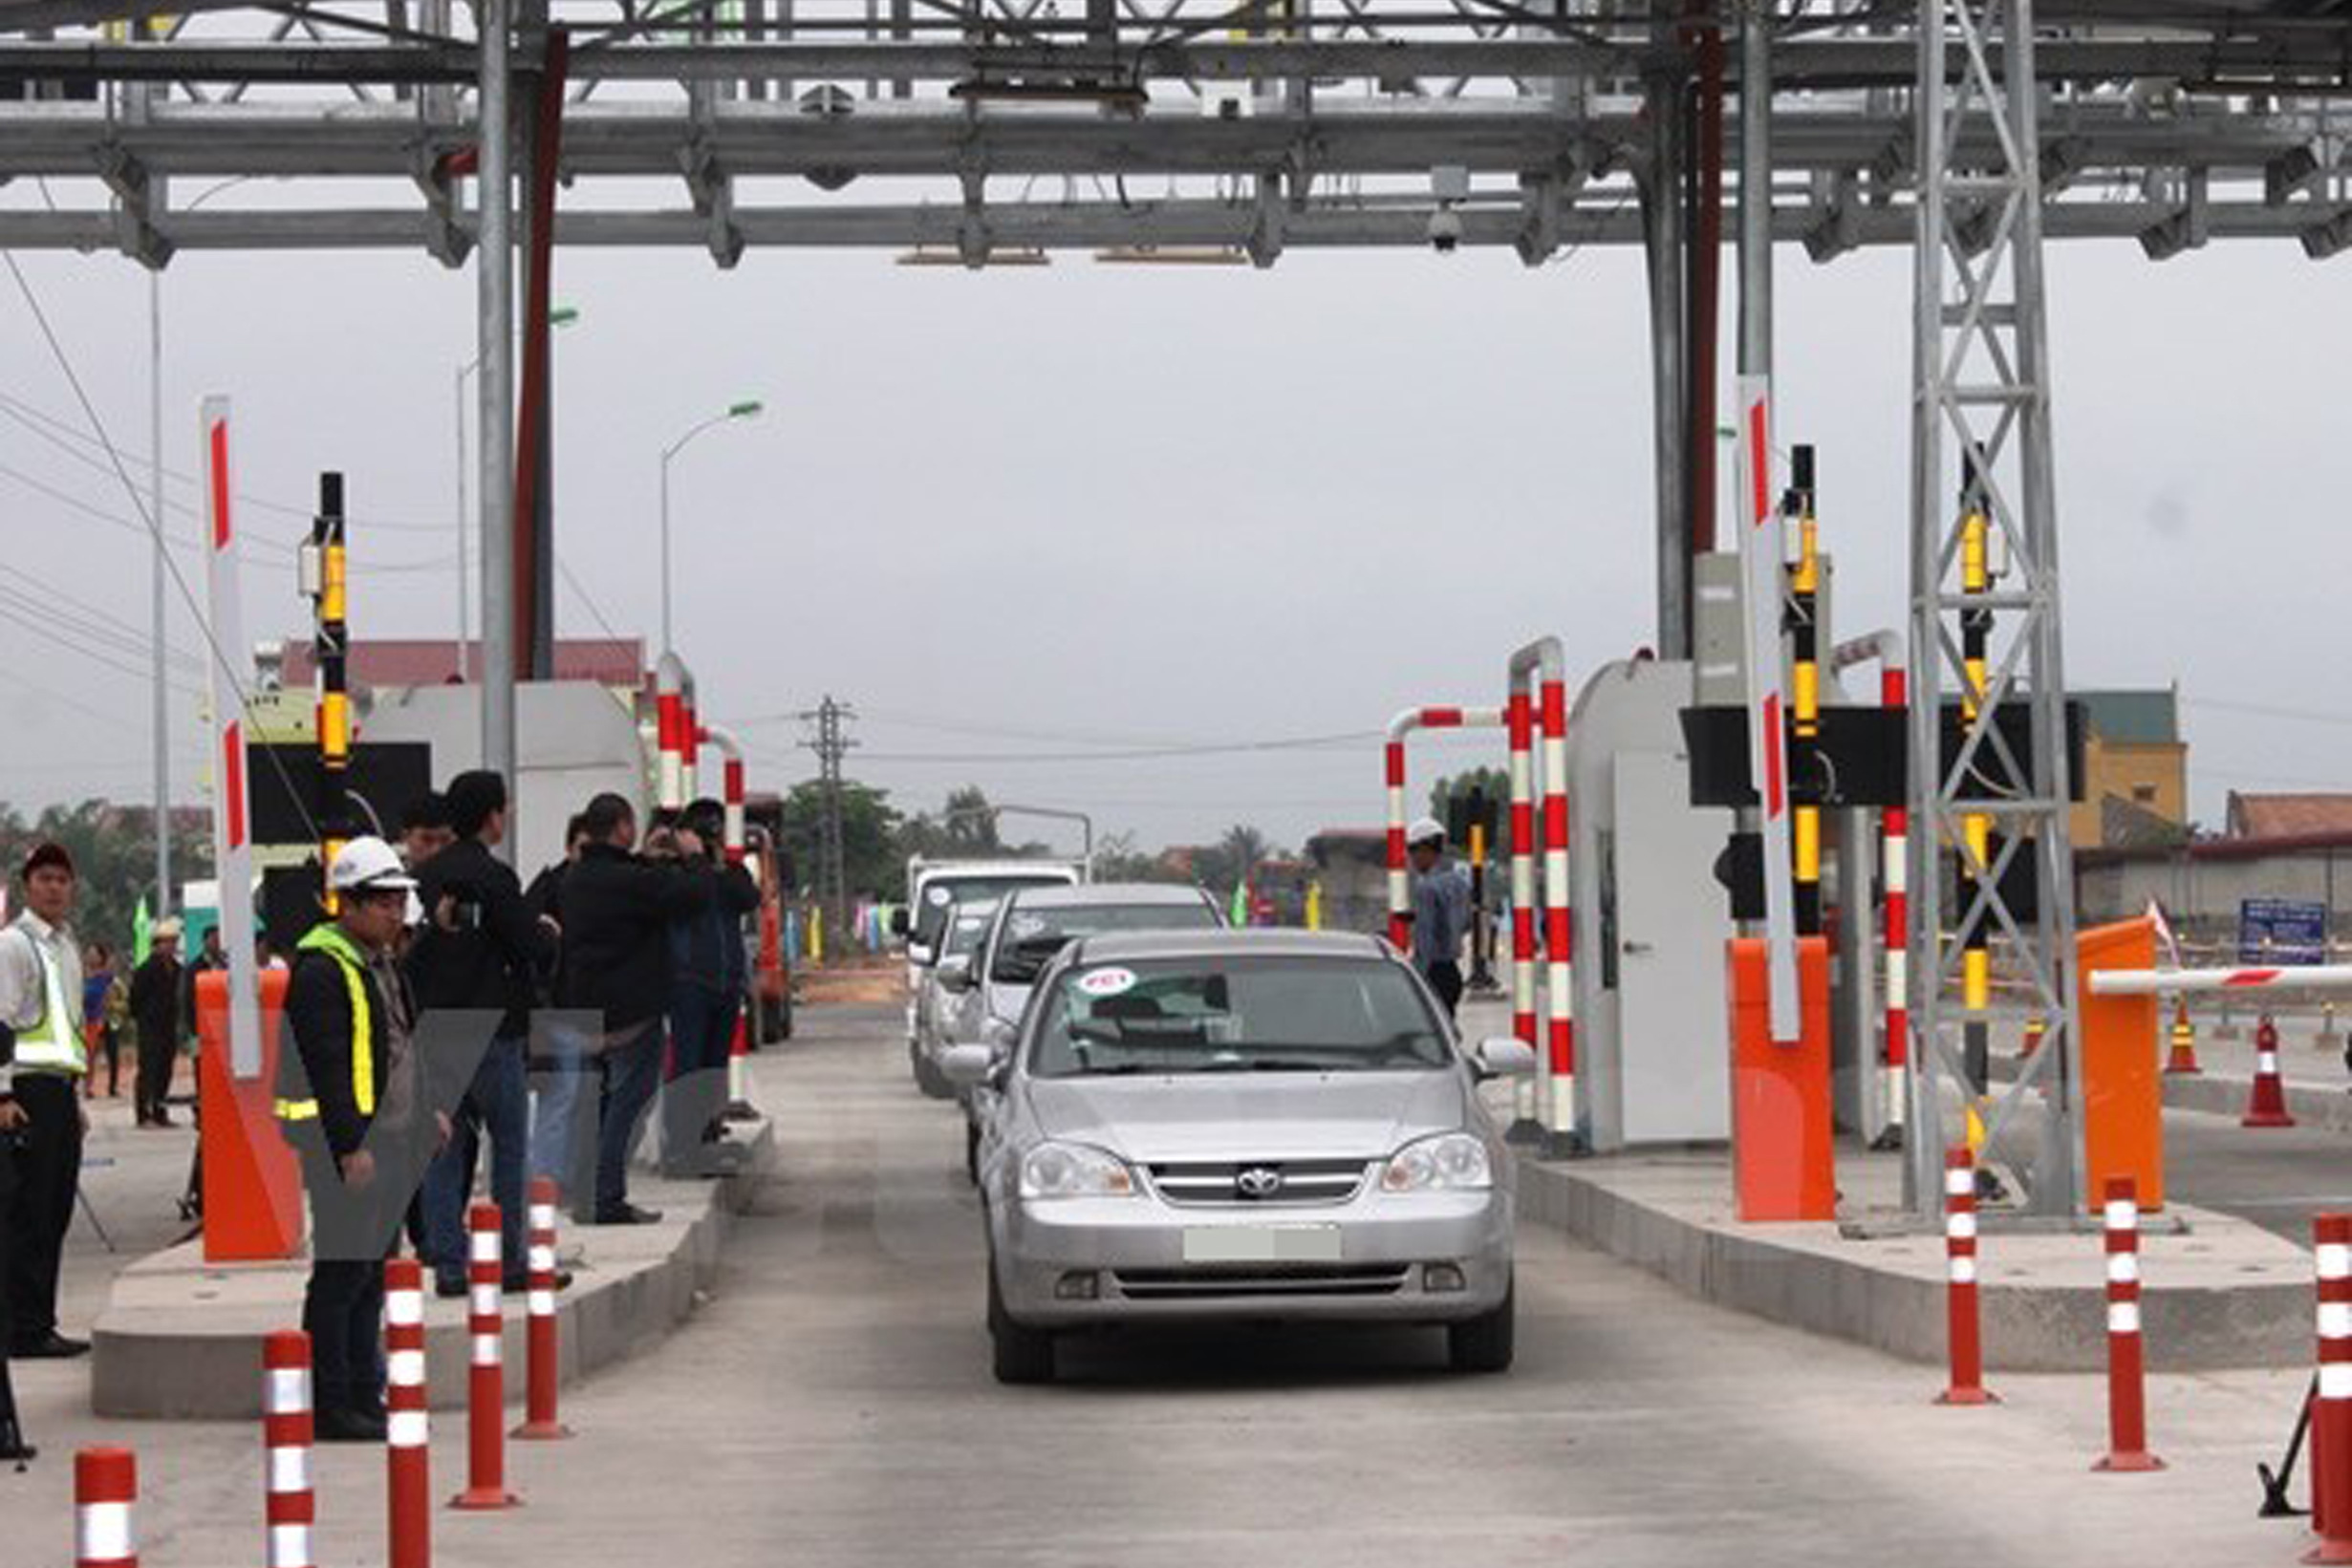 Thử nghiệm hệ thống trạm thu phí không dừng đối với các phương tiện lưu thông trên quốc lộ 1. Ảnh: Việt Hùng